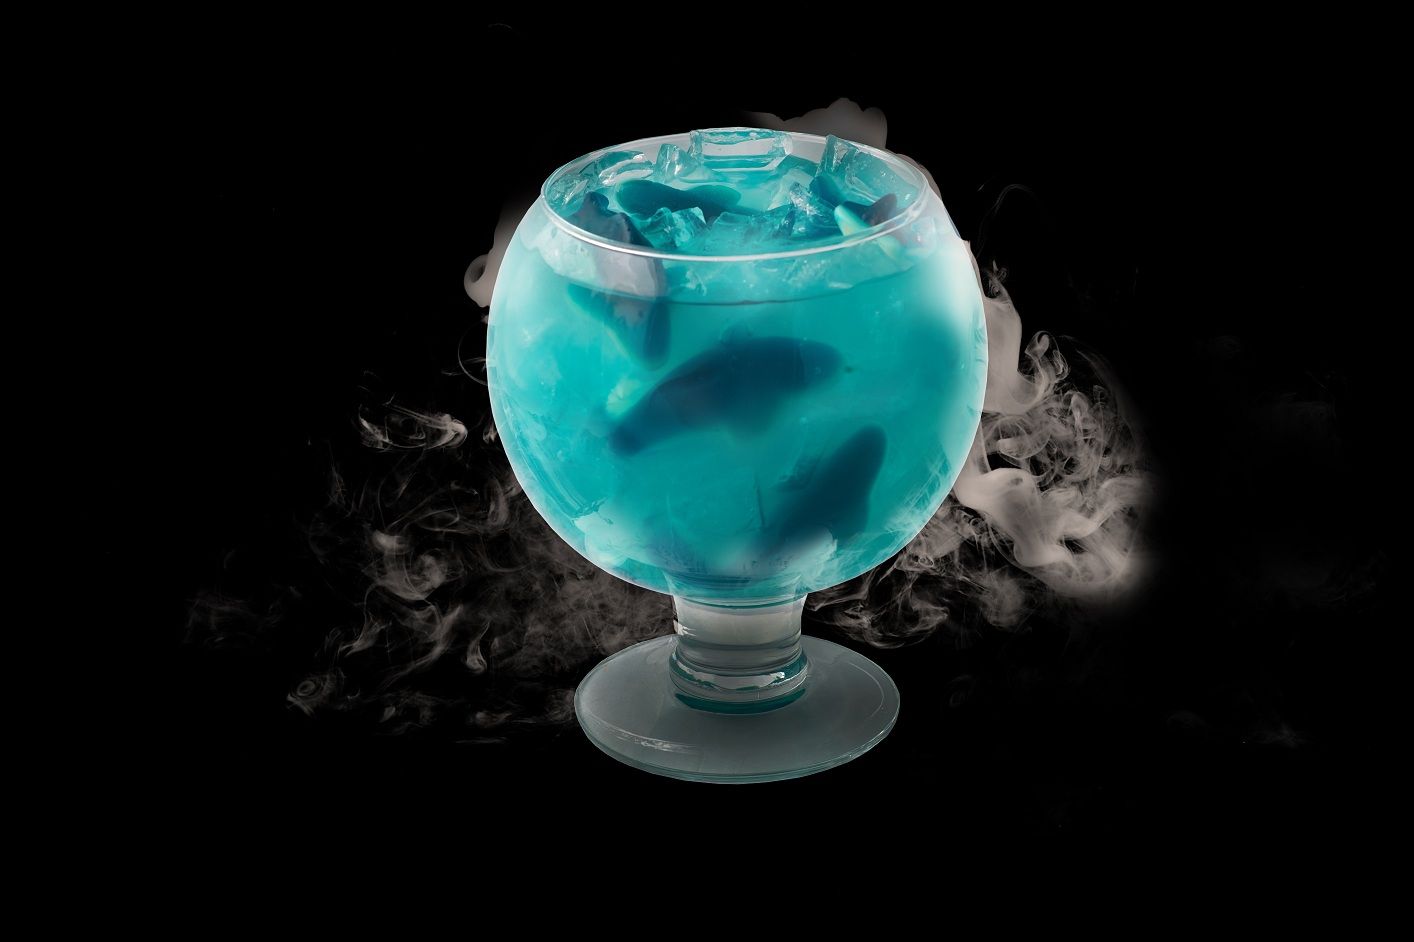 ocean blue drink from amigo